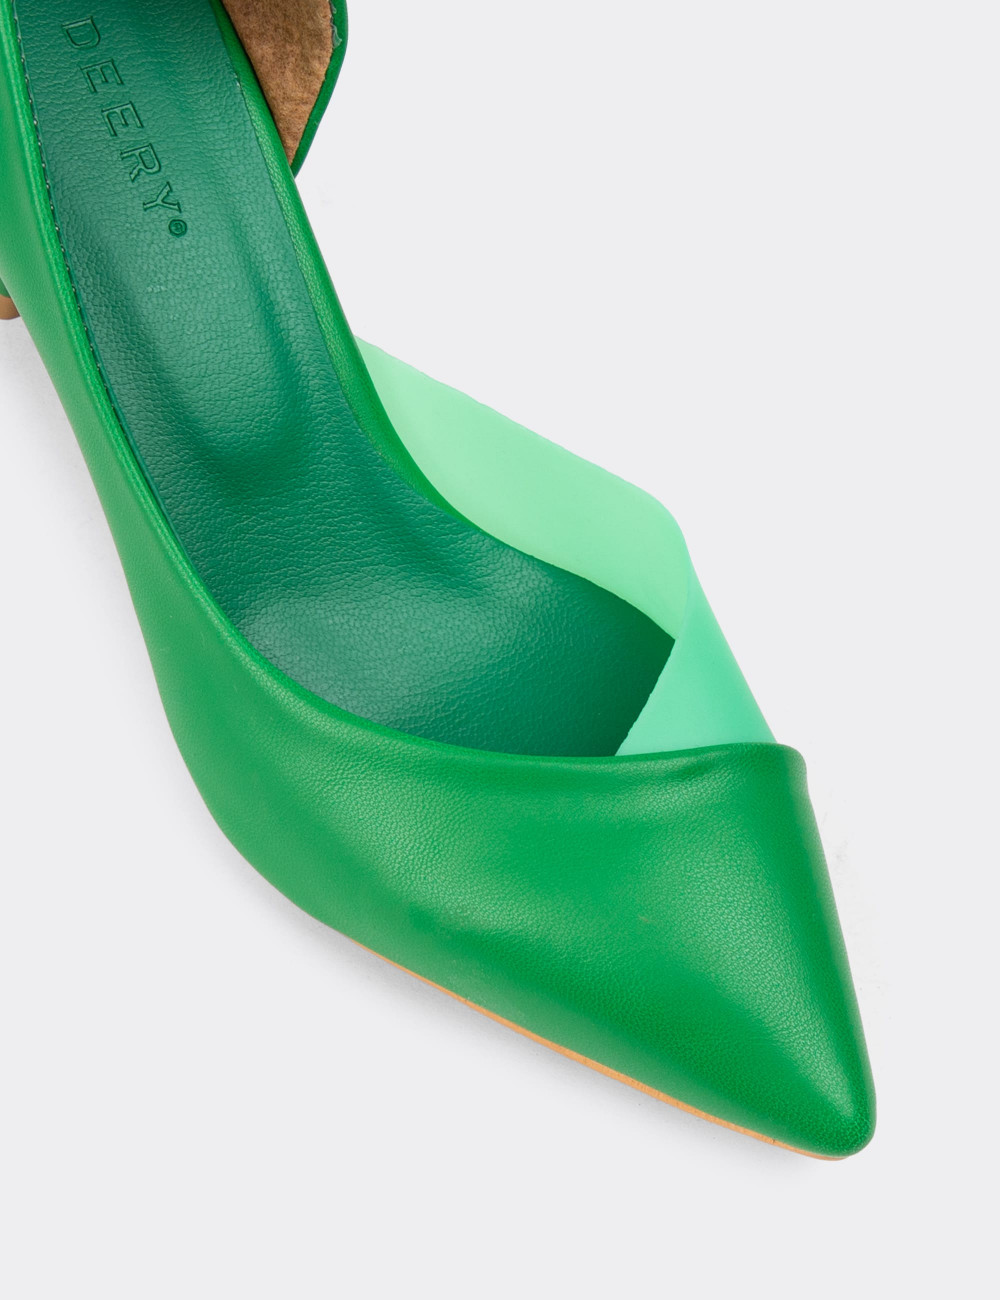 Yeşil Kadın Topuklu Ayakkabı - NW351ZYSLM01